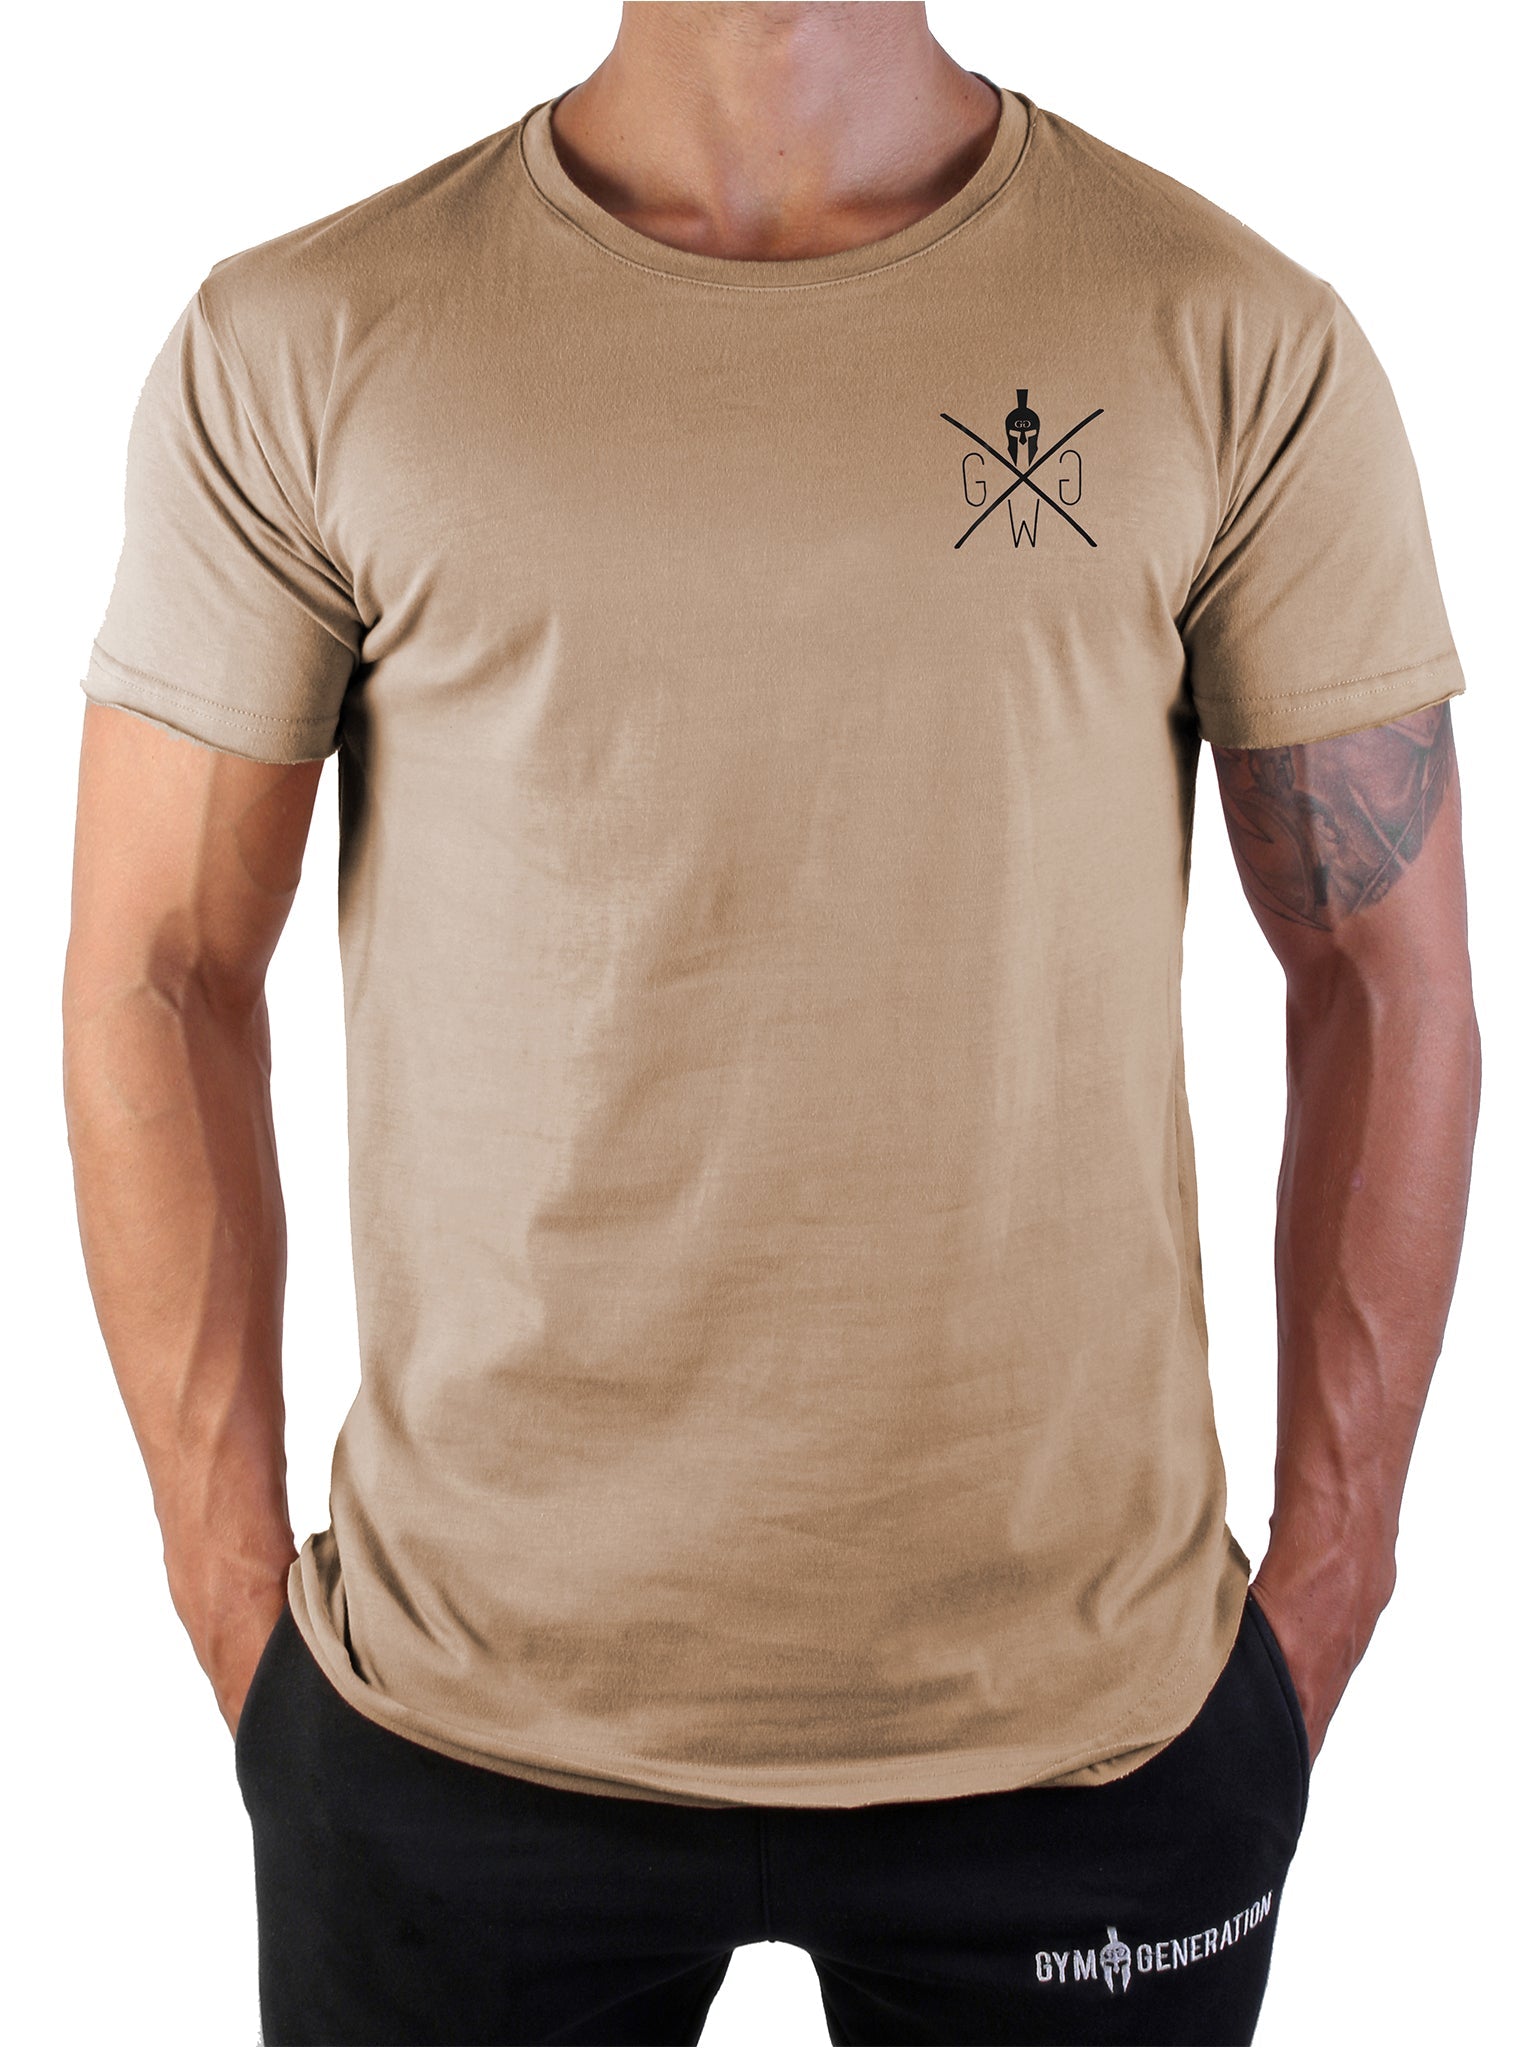 Sportliches und langlebiges Valhalla T-Shirt von Gym Generation, symbolisiert Durchhaltevermögen und Willenskraft.